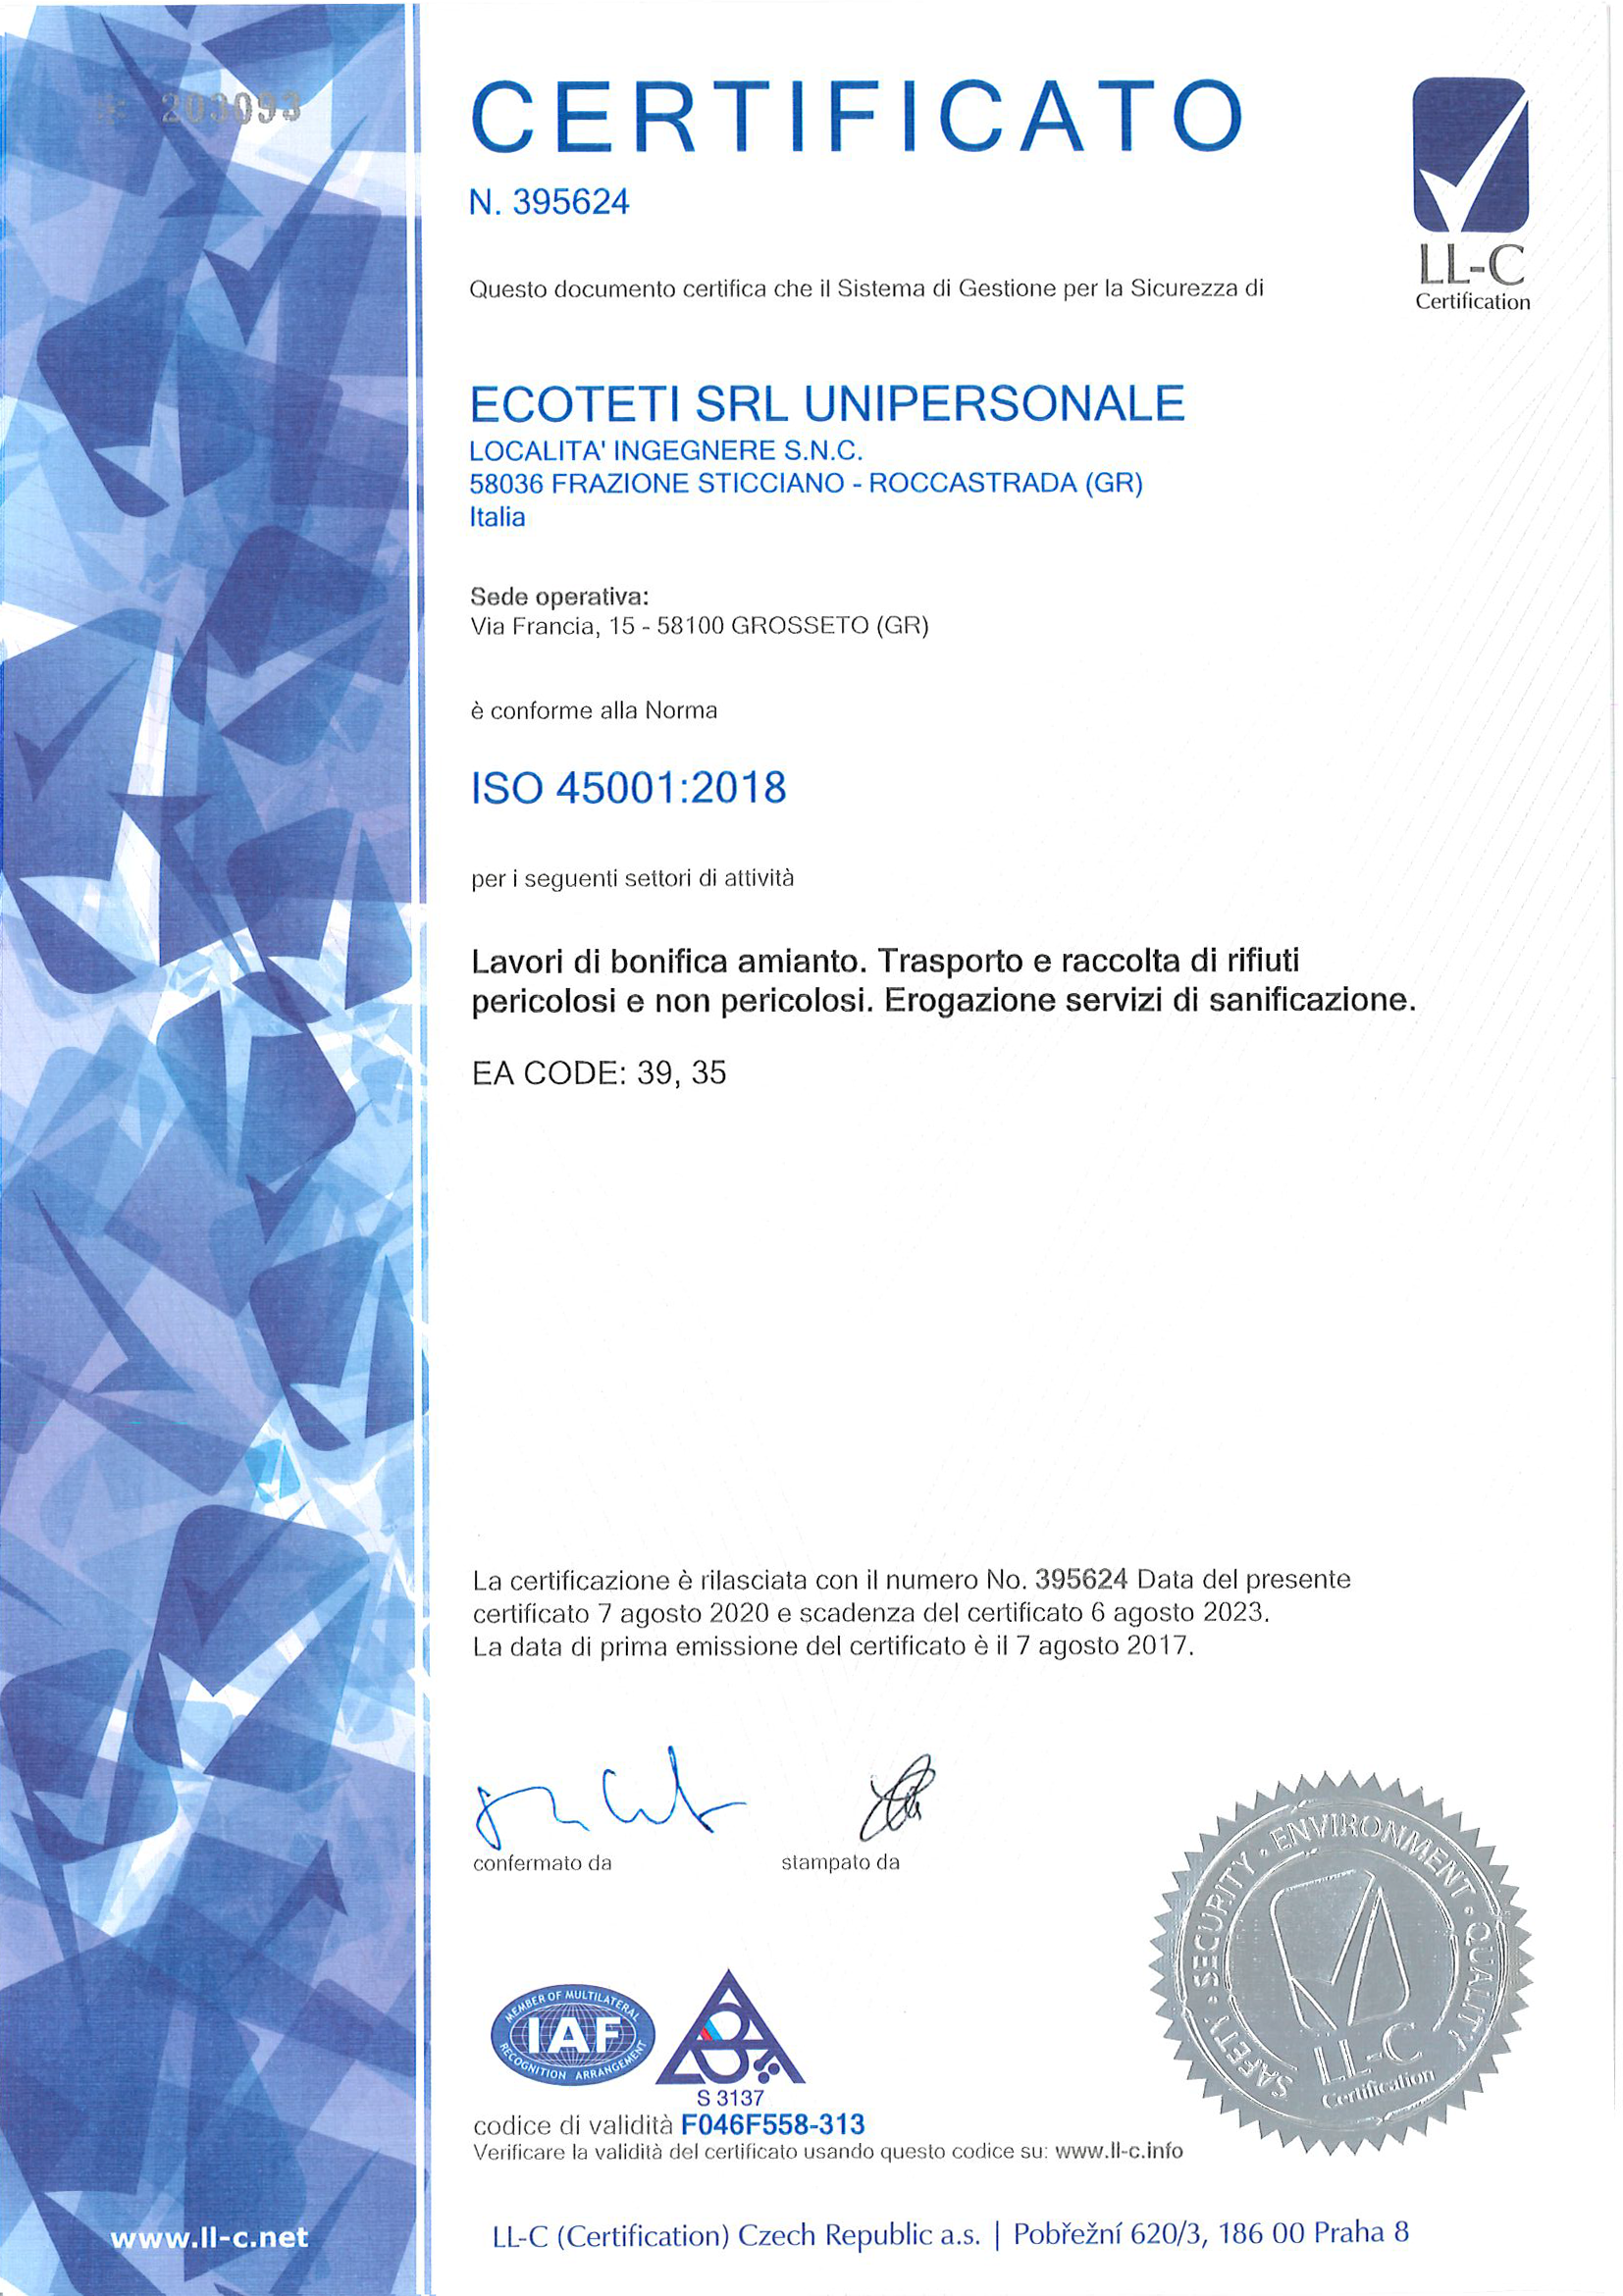 Azienda certificata LL-C (Certification) ISO 45001:2018 Sistema di gestione per la sicurezza e la salute sul luogo di lavoro (OHS) - Ecoteti srl